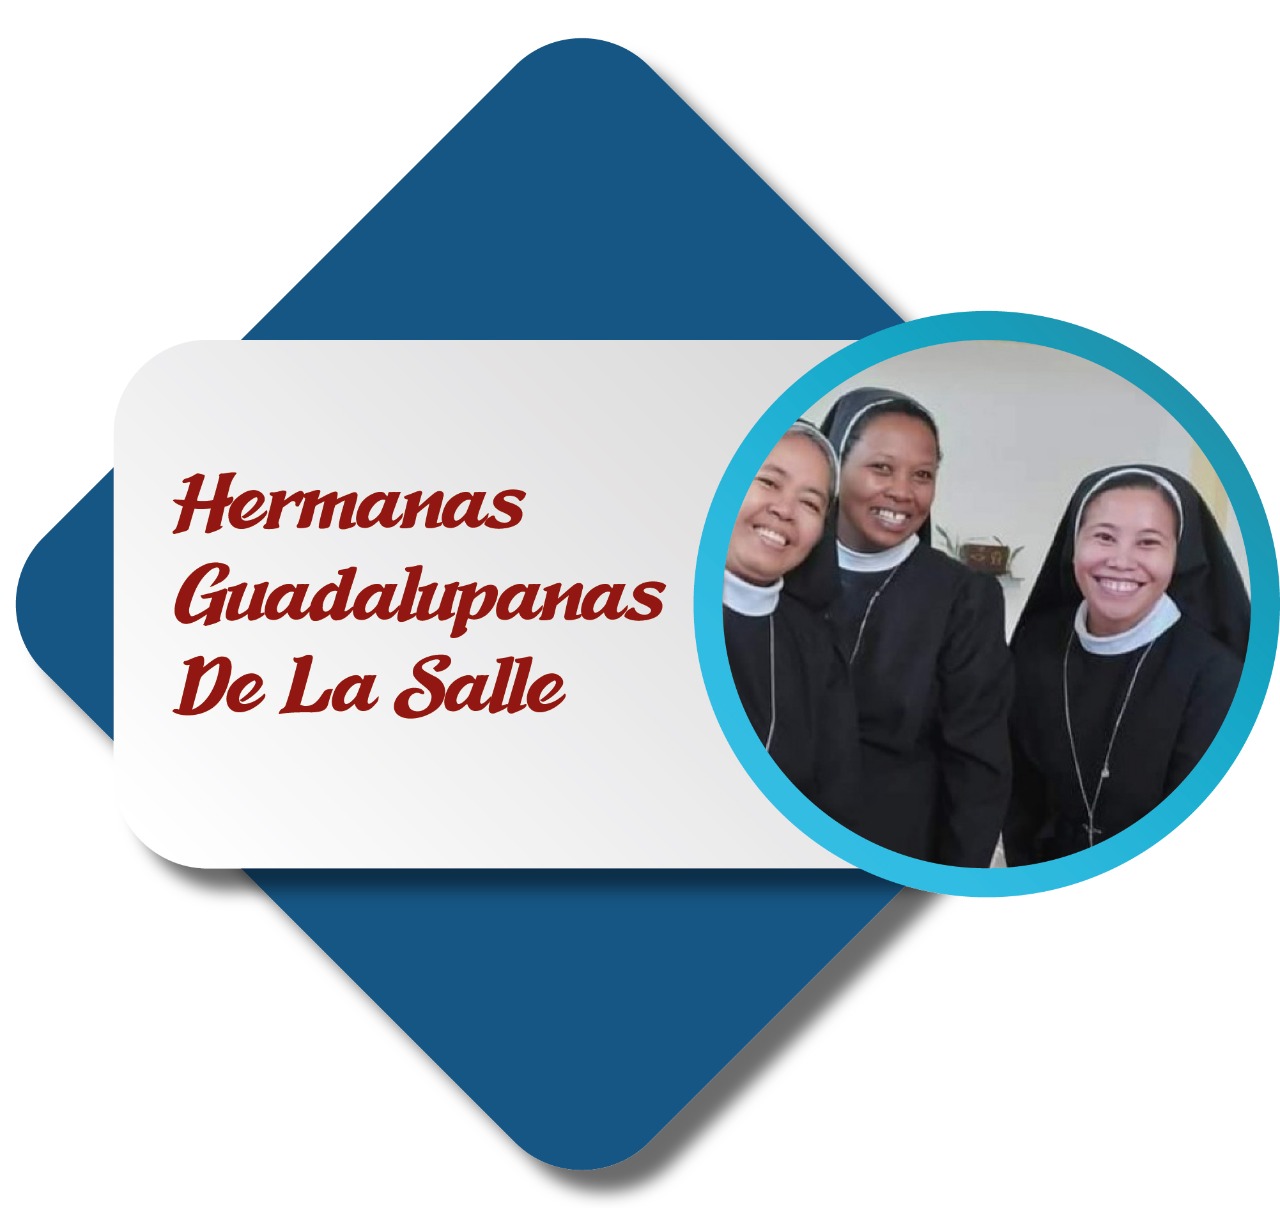 Hermanas Guadalupanas De La Salle